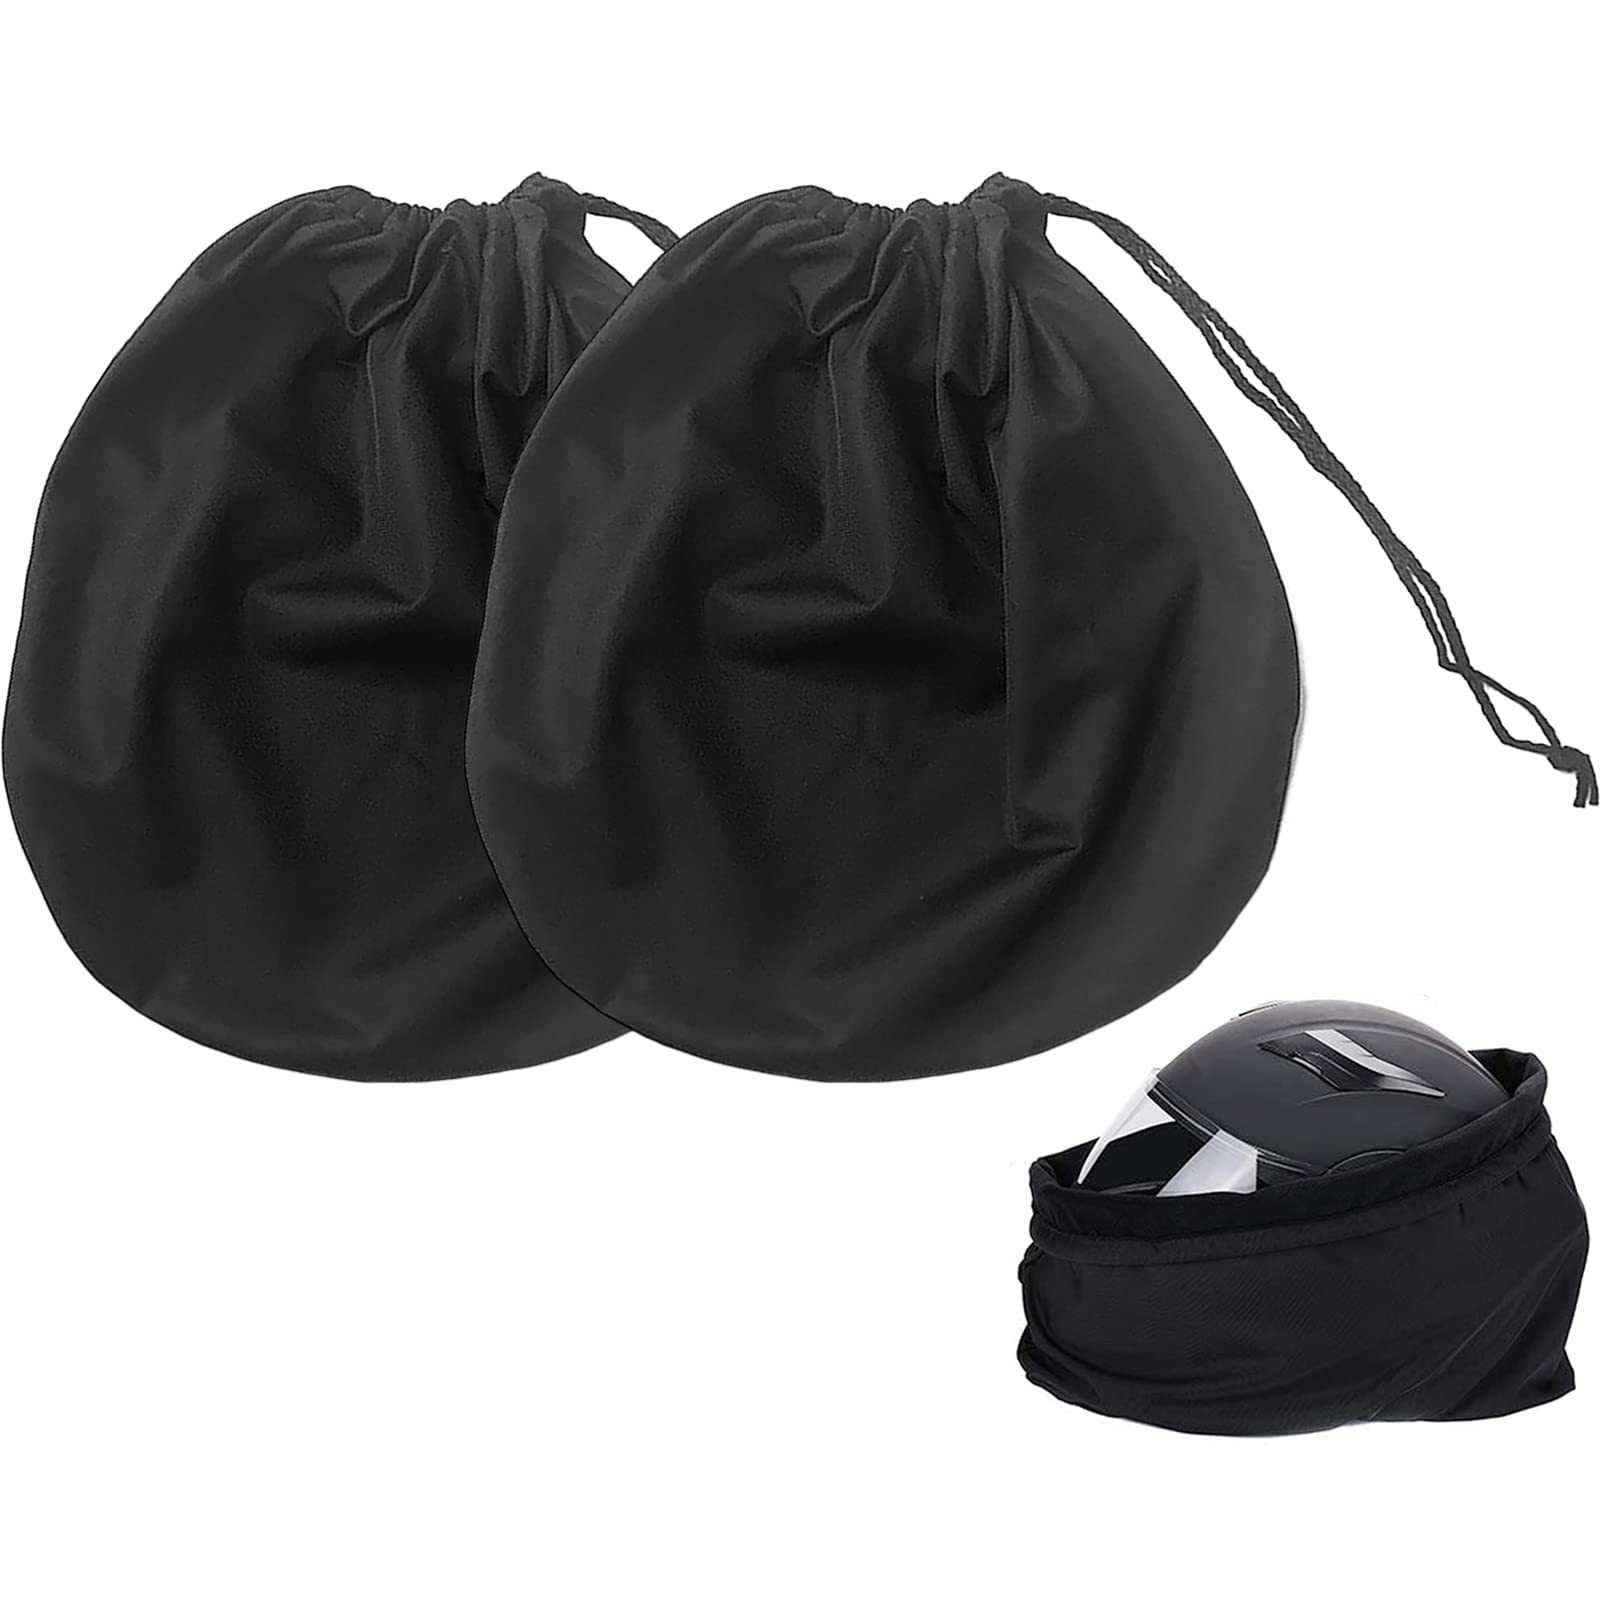 サムコス ヘルメット入れ 巾着式 保護袋 2個セット ブラック 収納 バッグ バイク バスケットボール ヘルメットケース サッカー スポーツ 袋 多機能収納 柔軟 軽量 ヘルメット エコバッグ